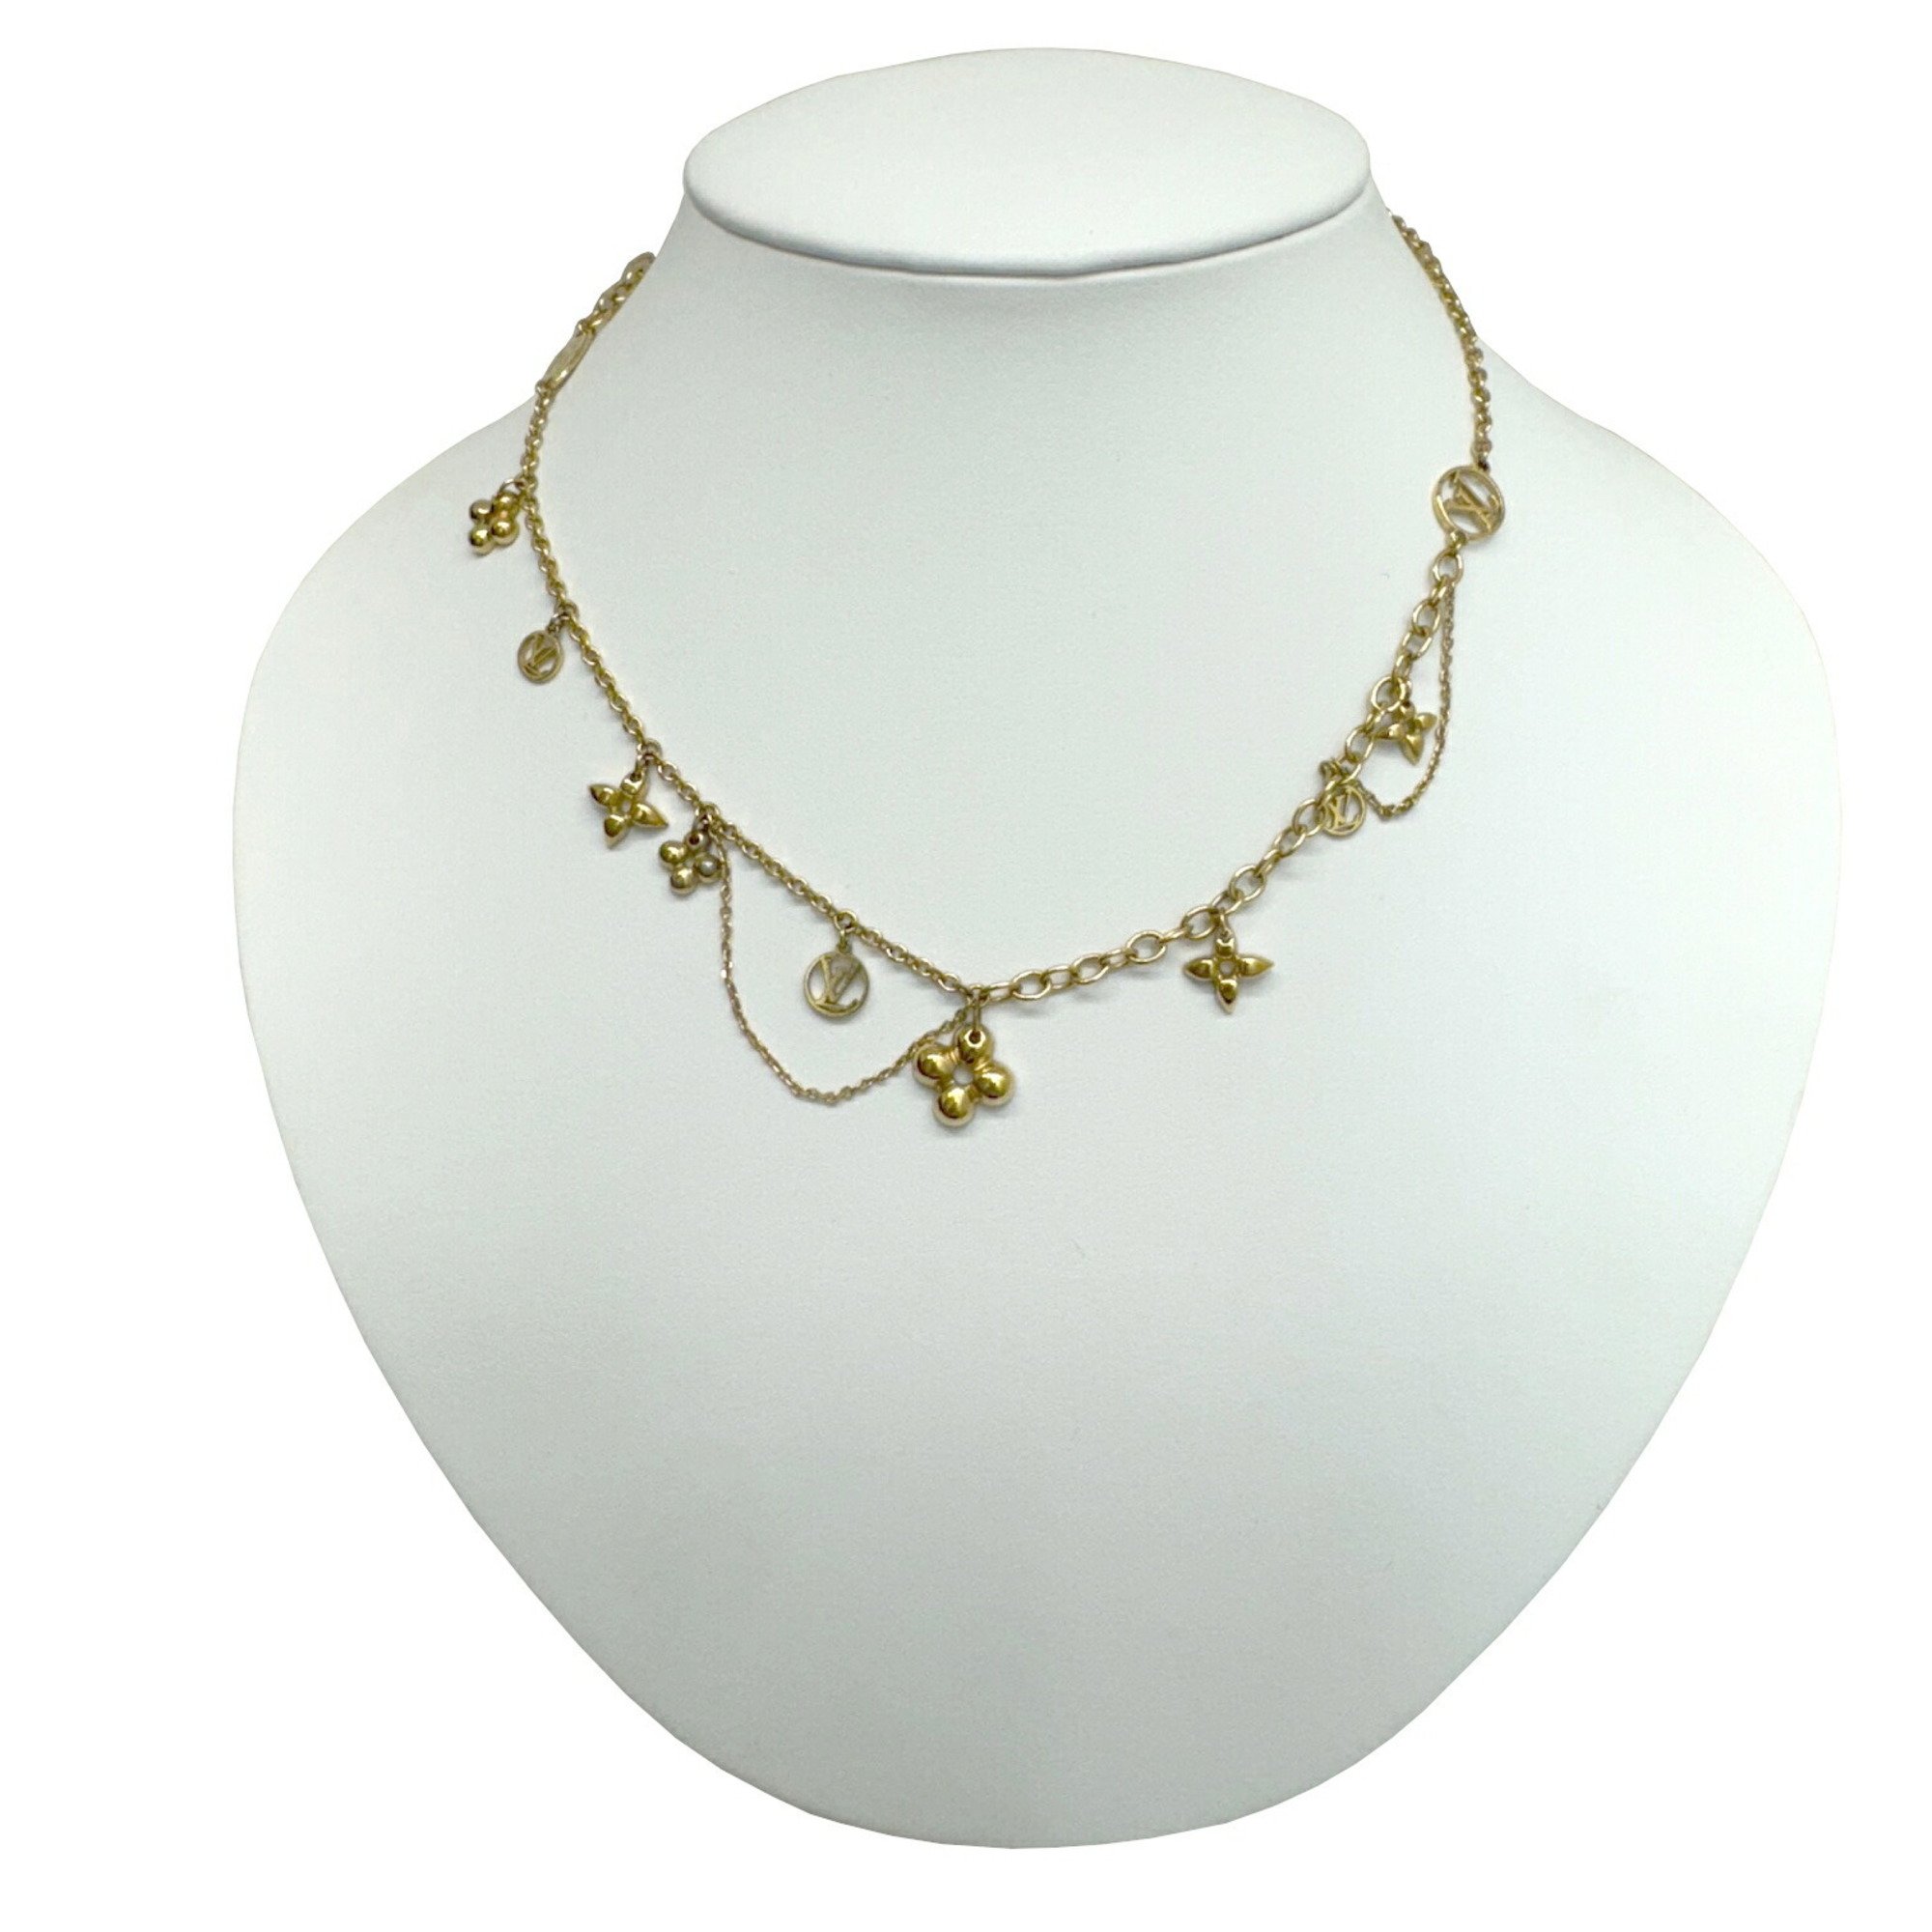 LOUIS VUITTON Louis Vuitton Collier Blooming Necklace Pendant Gold Color GP M64855 OB0118 Women's